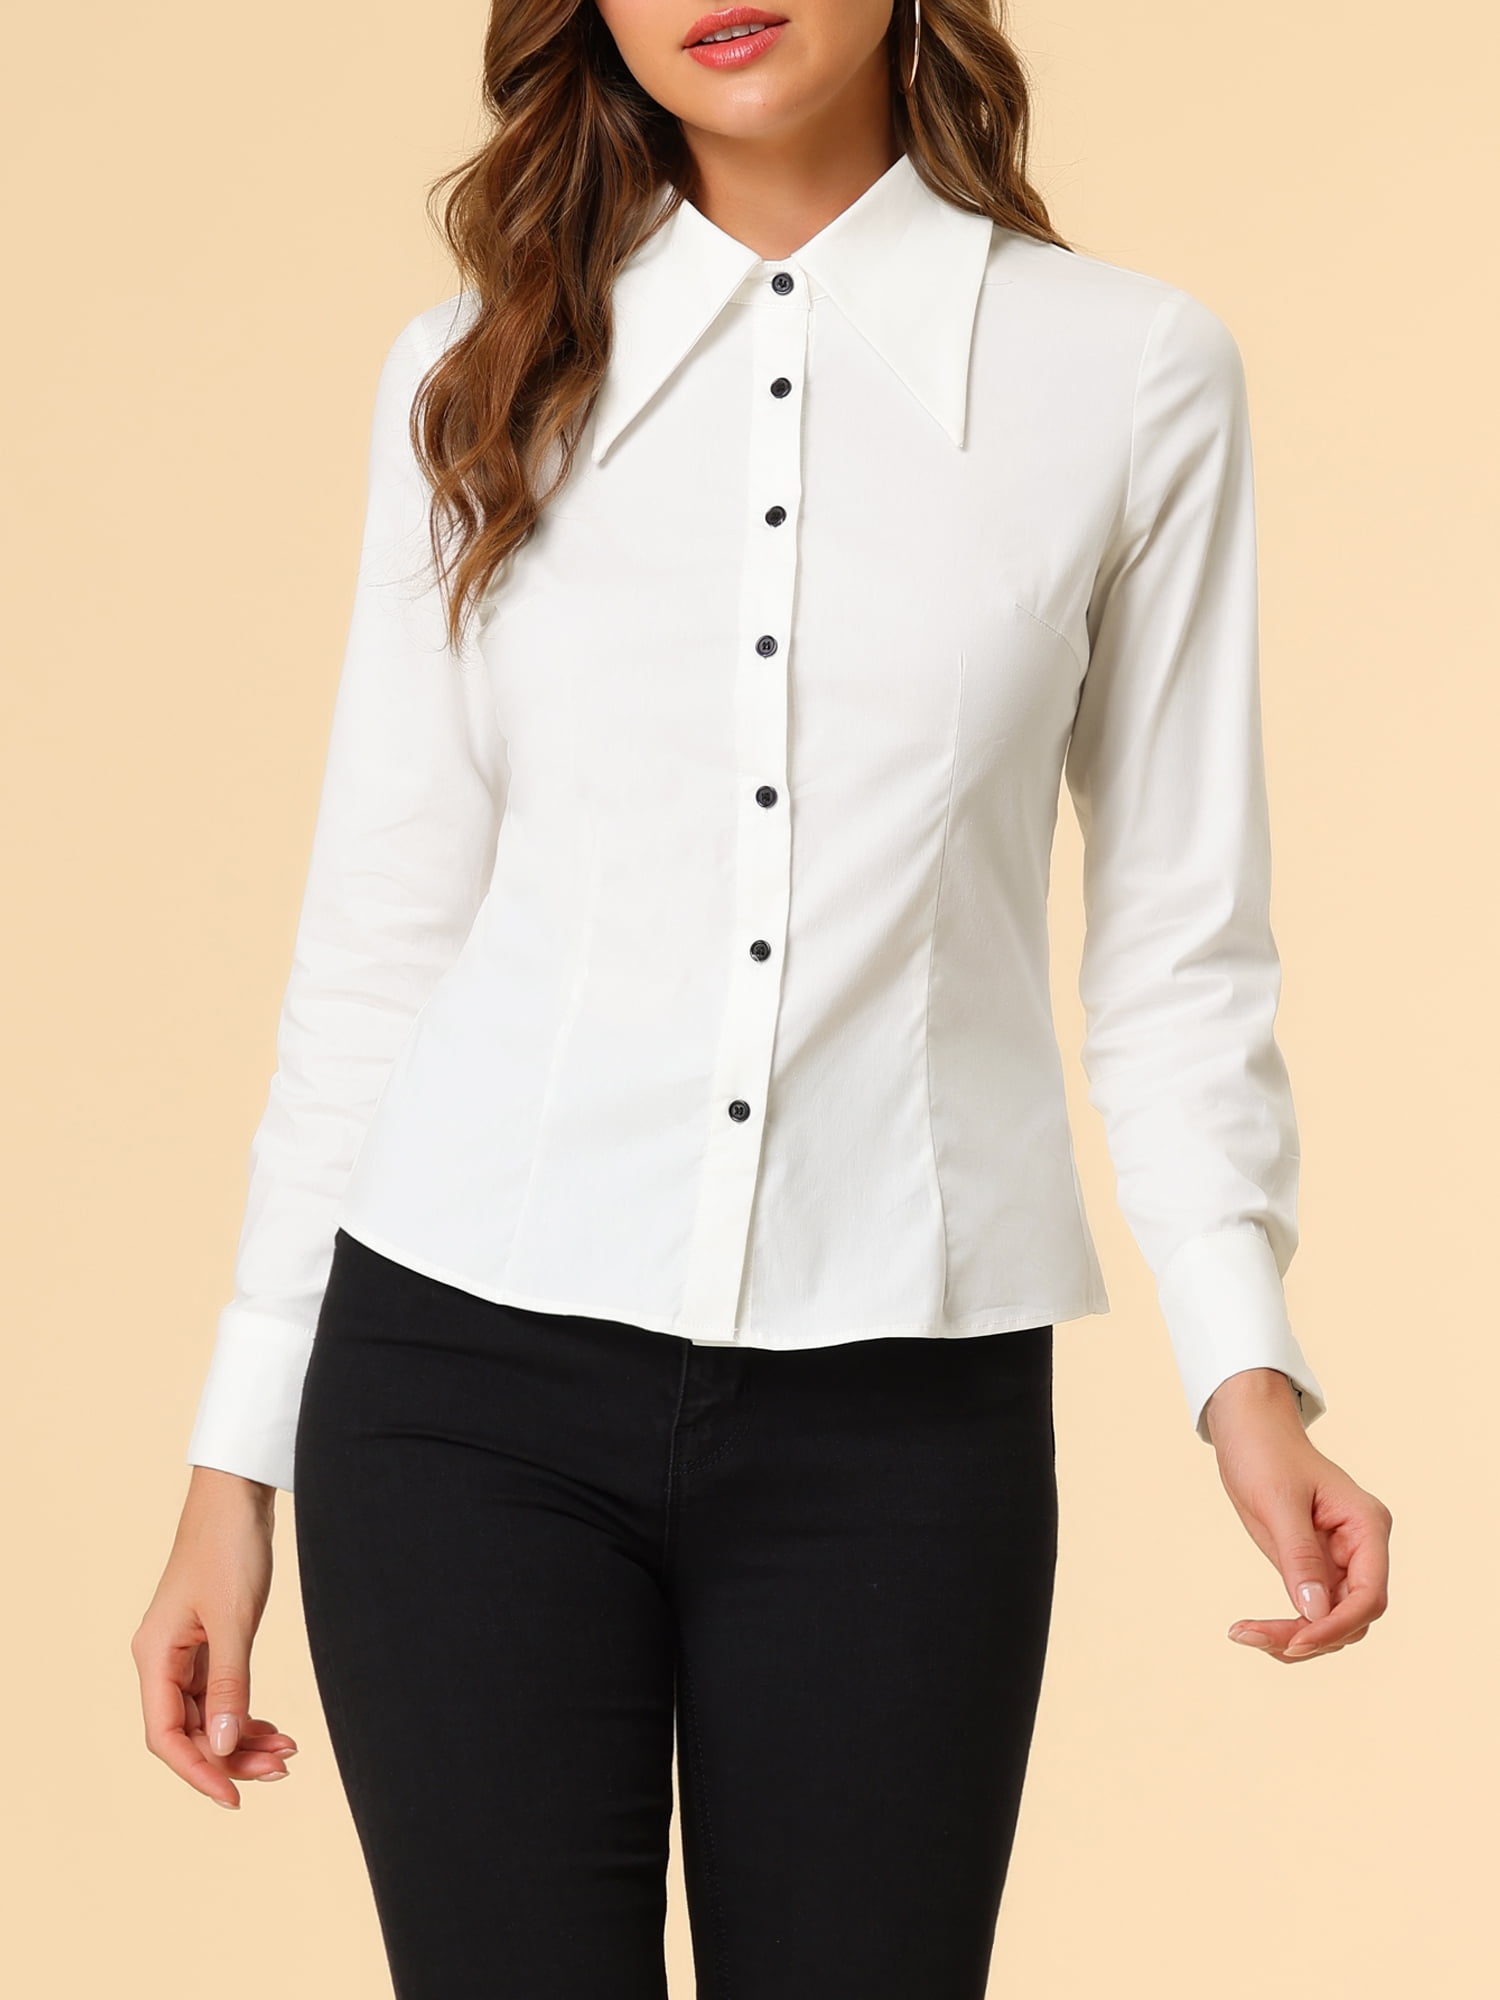 Allegra K Women's Point Collar Long Sleeve Button Shirt - Walmart.com